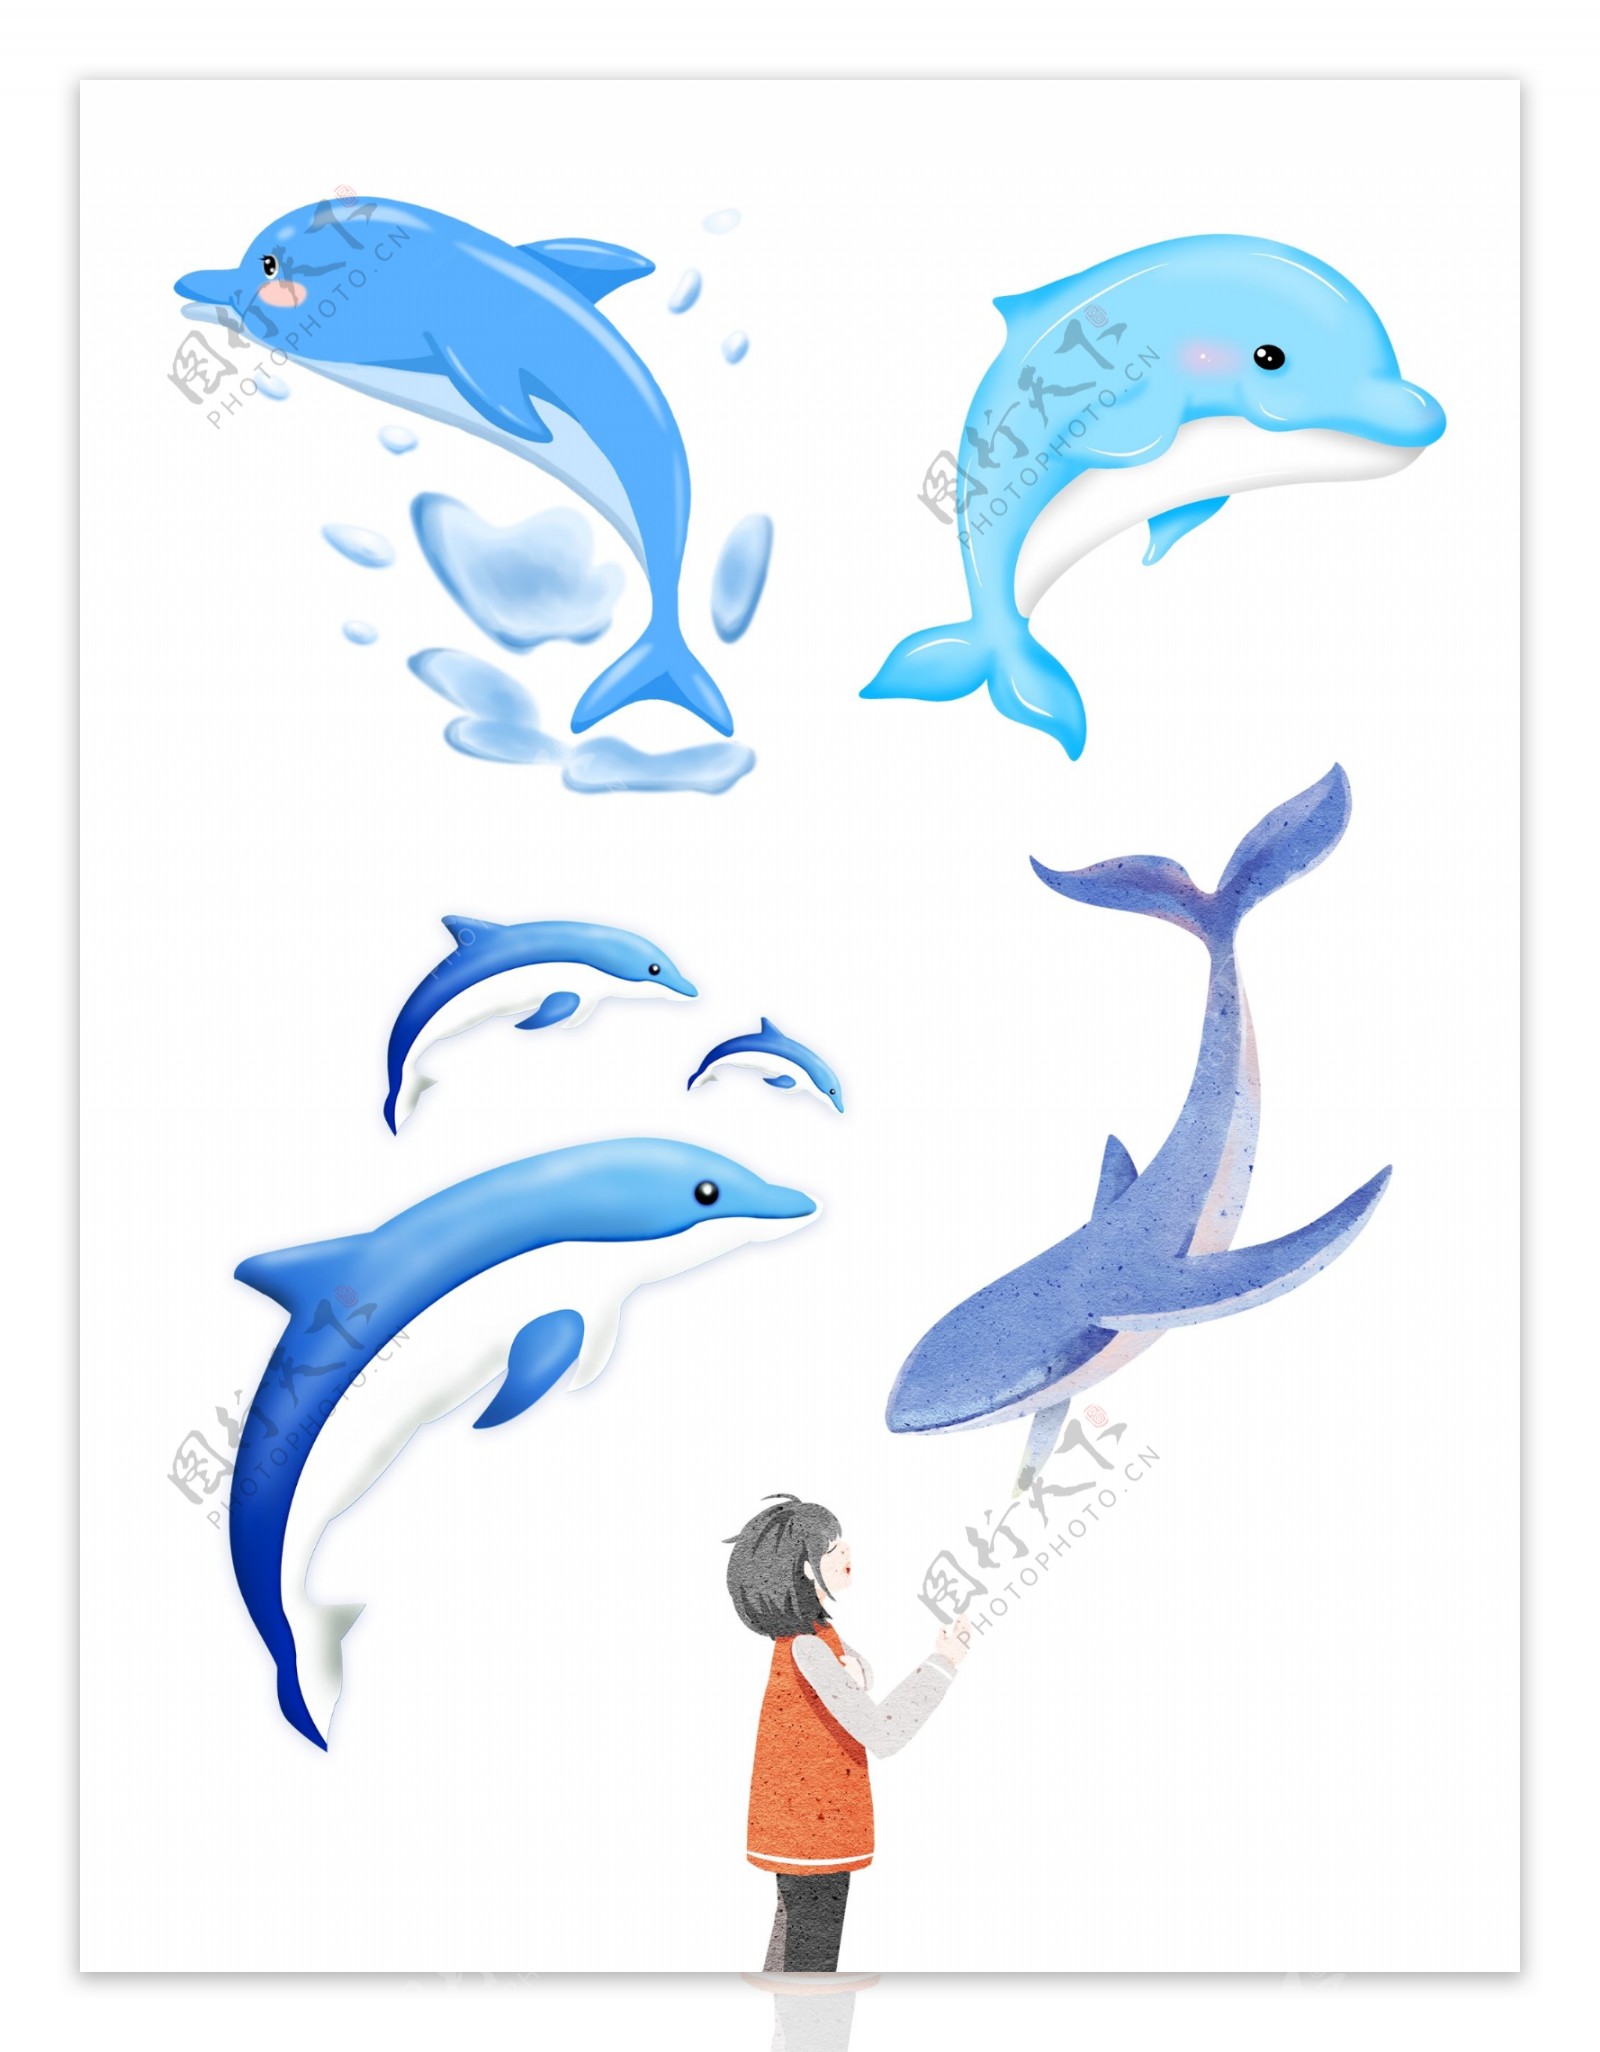 海豚 插画 壁纸 - 堆糖，美图壁纸兴趣社区